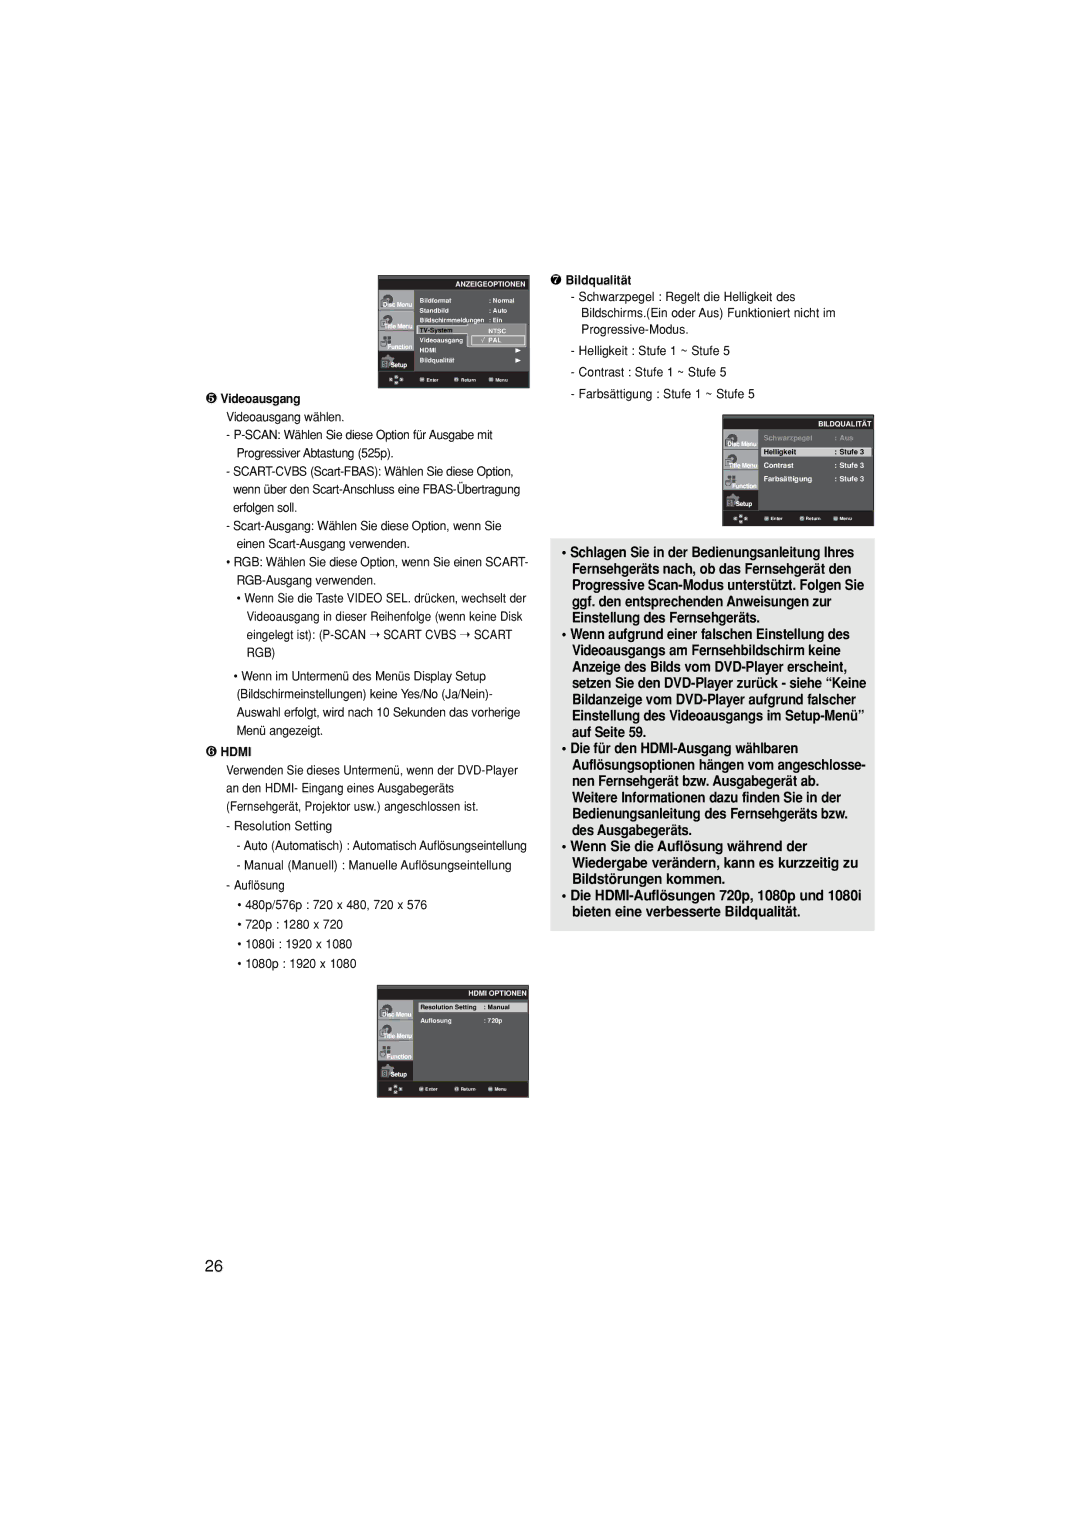 Samsung DVD-1080P8/XEL, DVD-1080P8/XEU manual ❺ Videoausgang Videoausgang wählen, Resolution Setting, ❼ Bildqualität 